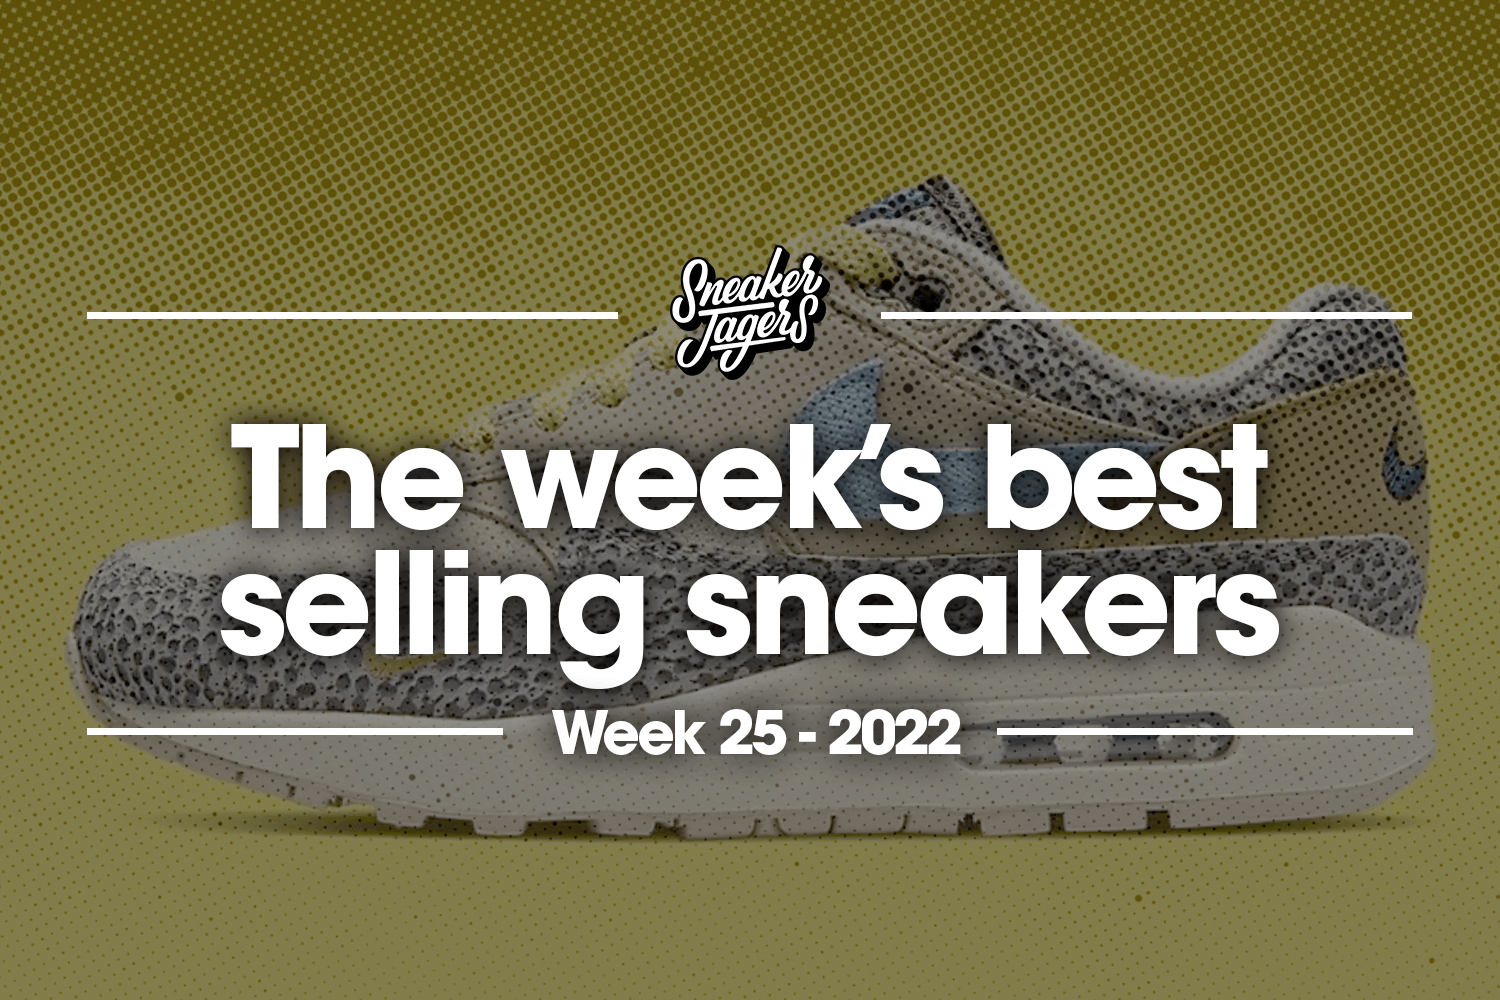 The 5 best-selling sneakers of week 25